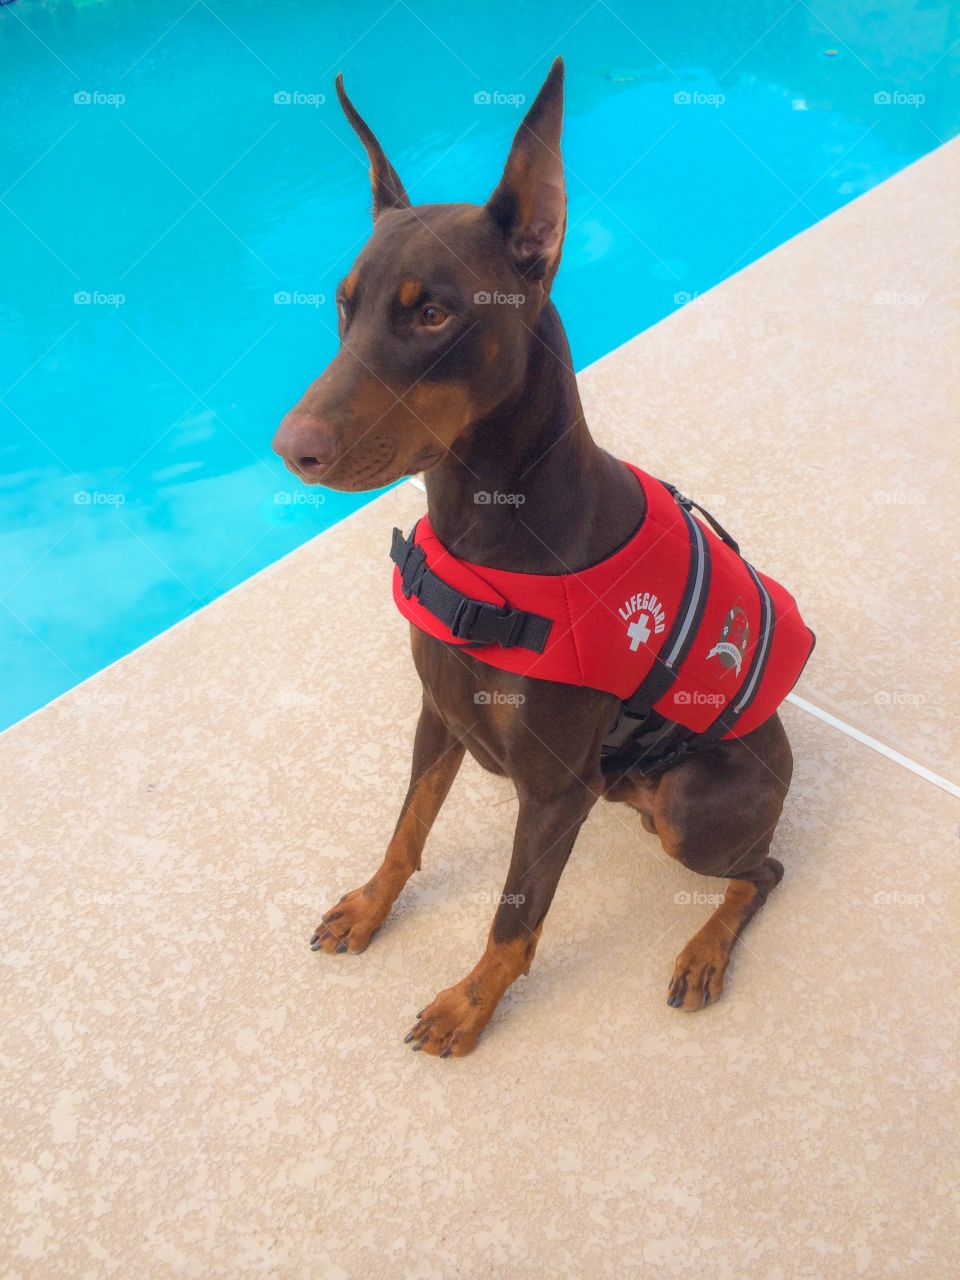 Pool guard dog!